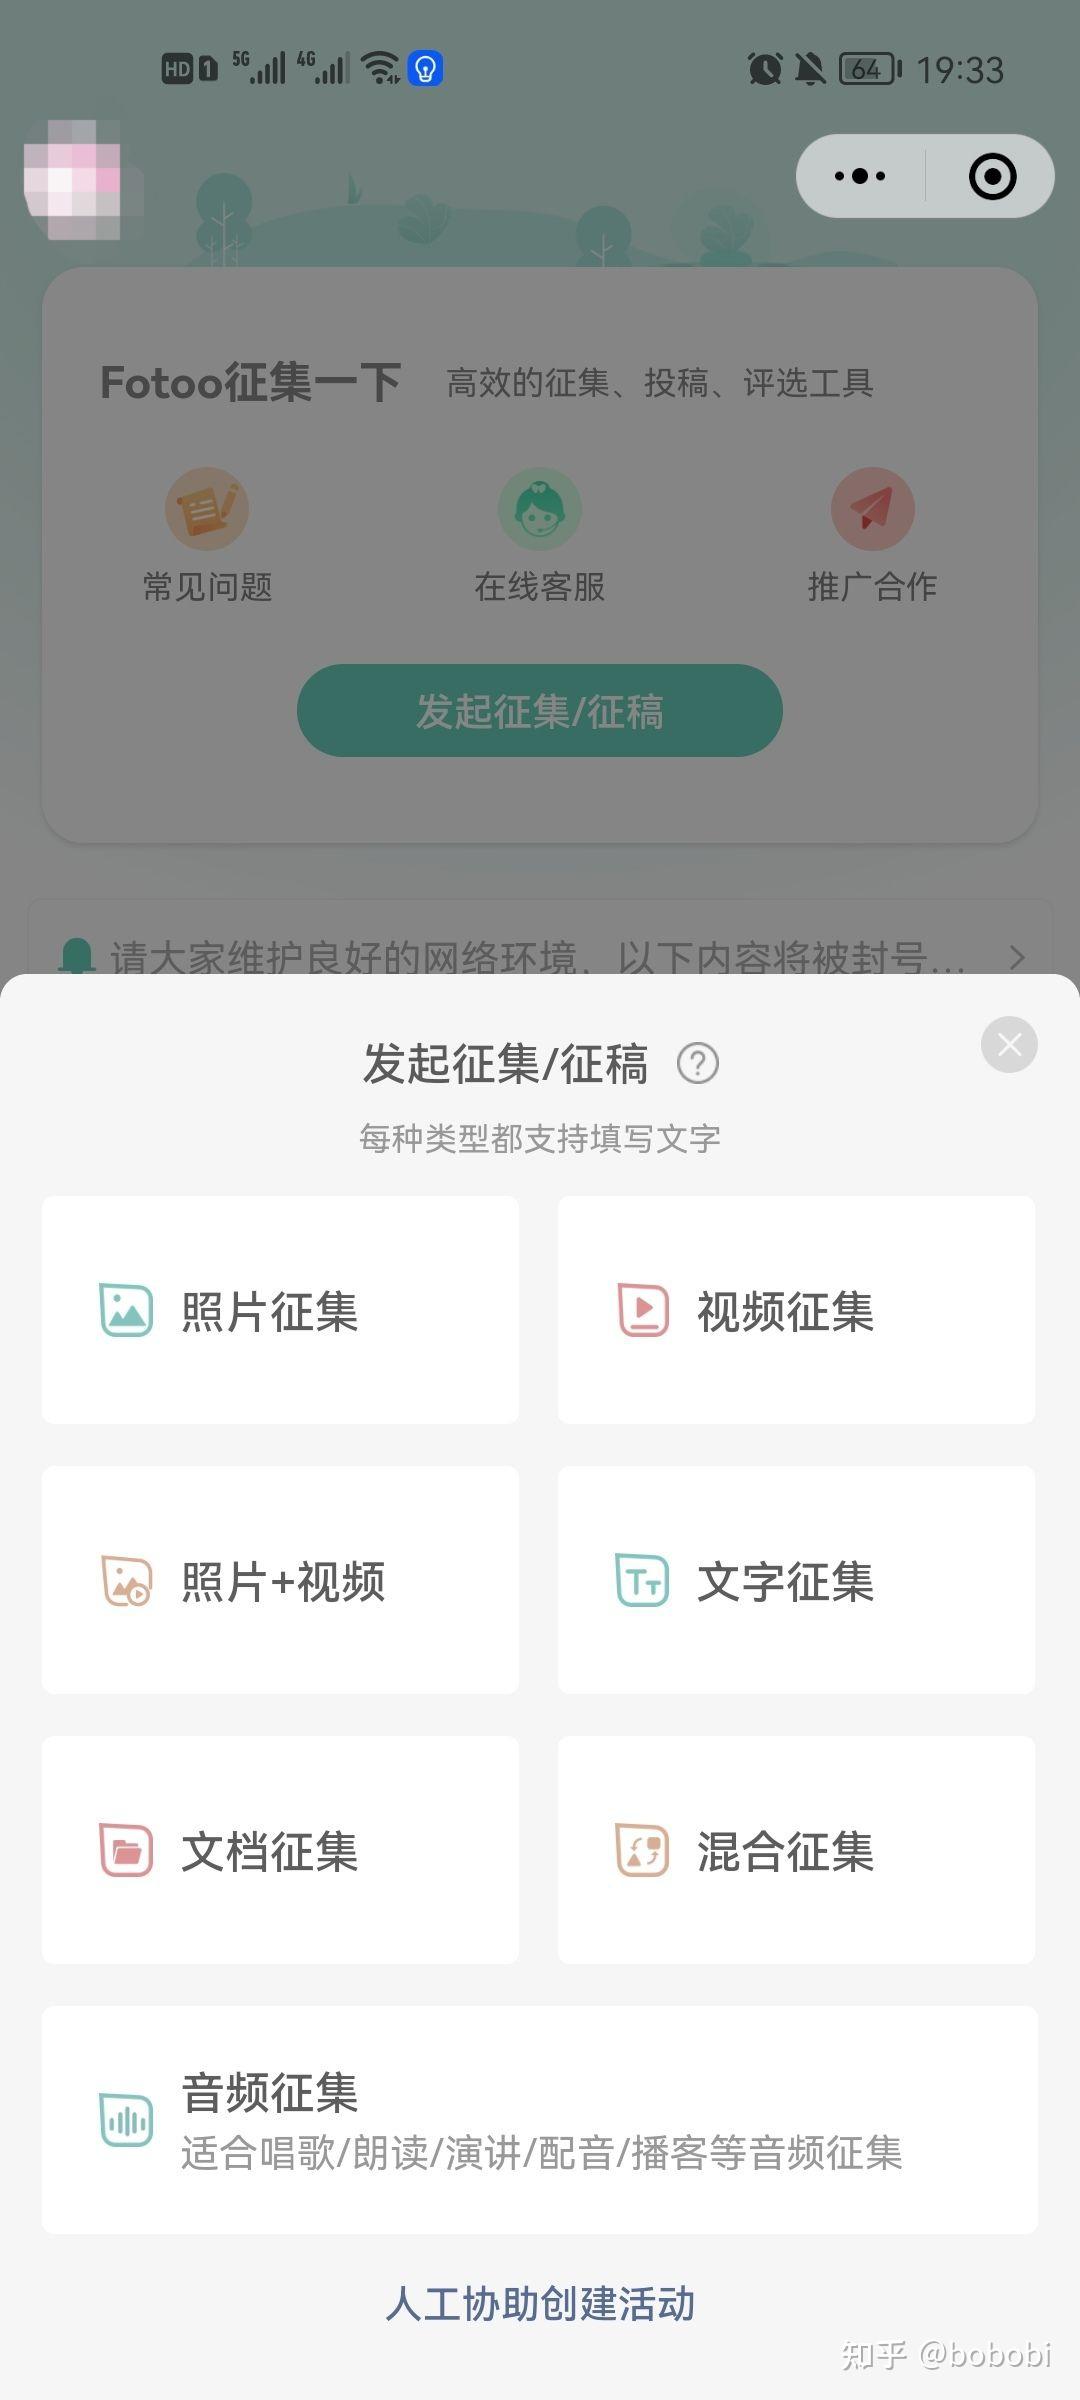 APP照片上传方式的使用说明 - 承影互联（北京）科技有限公司 - 客户支持服务平台